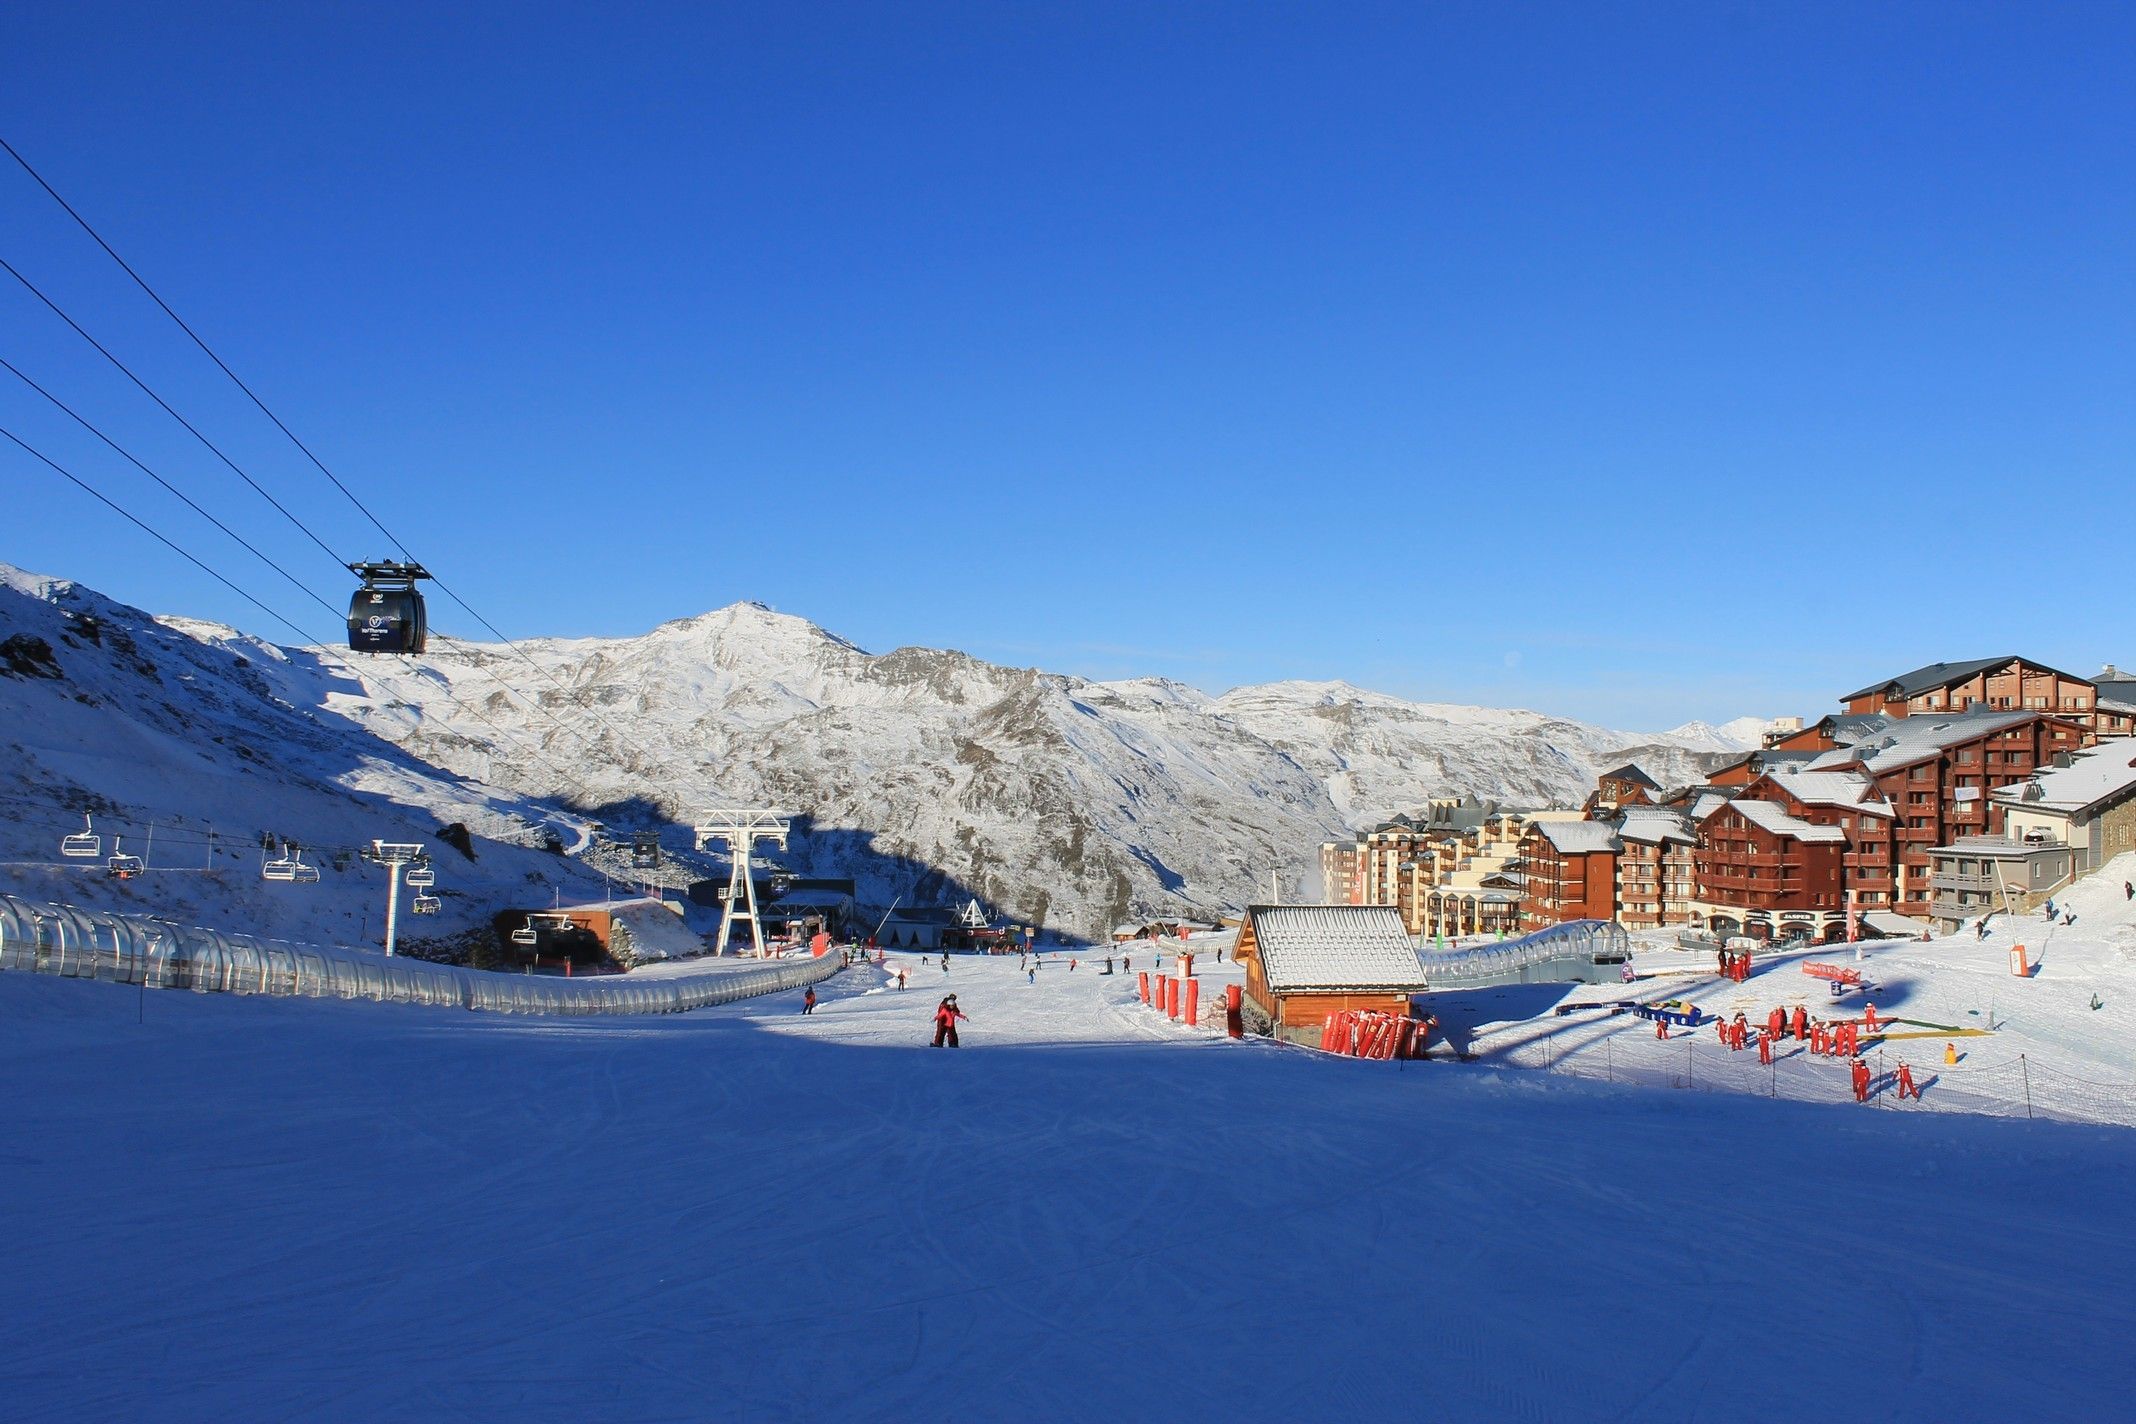 Het centrale punt van het skigebied bij Val Thorens zelf was in de ochtend nog erg rustig